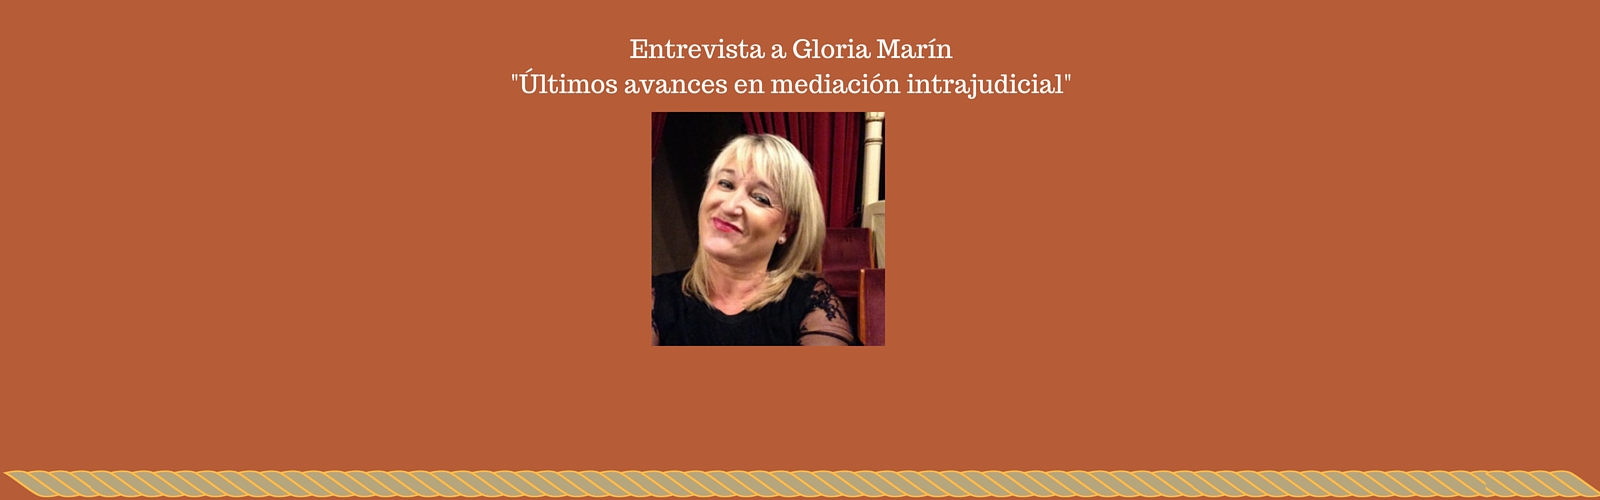 Entrevista a Gloria Marín González: últimos avances en mediación intrajudicial